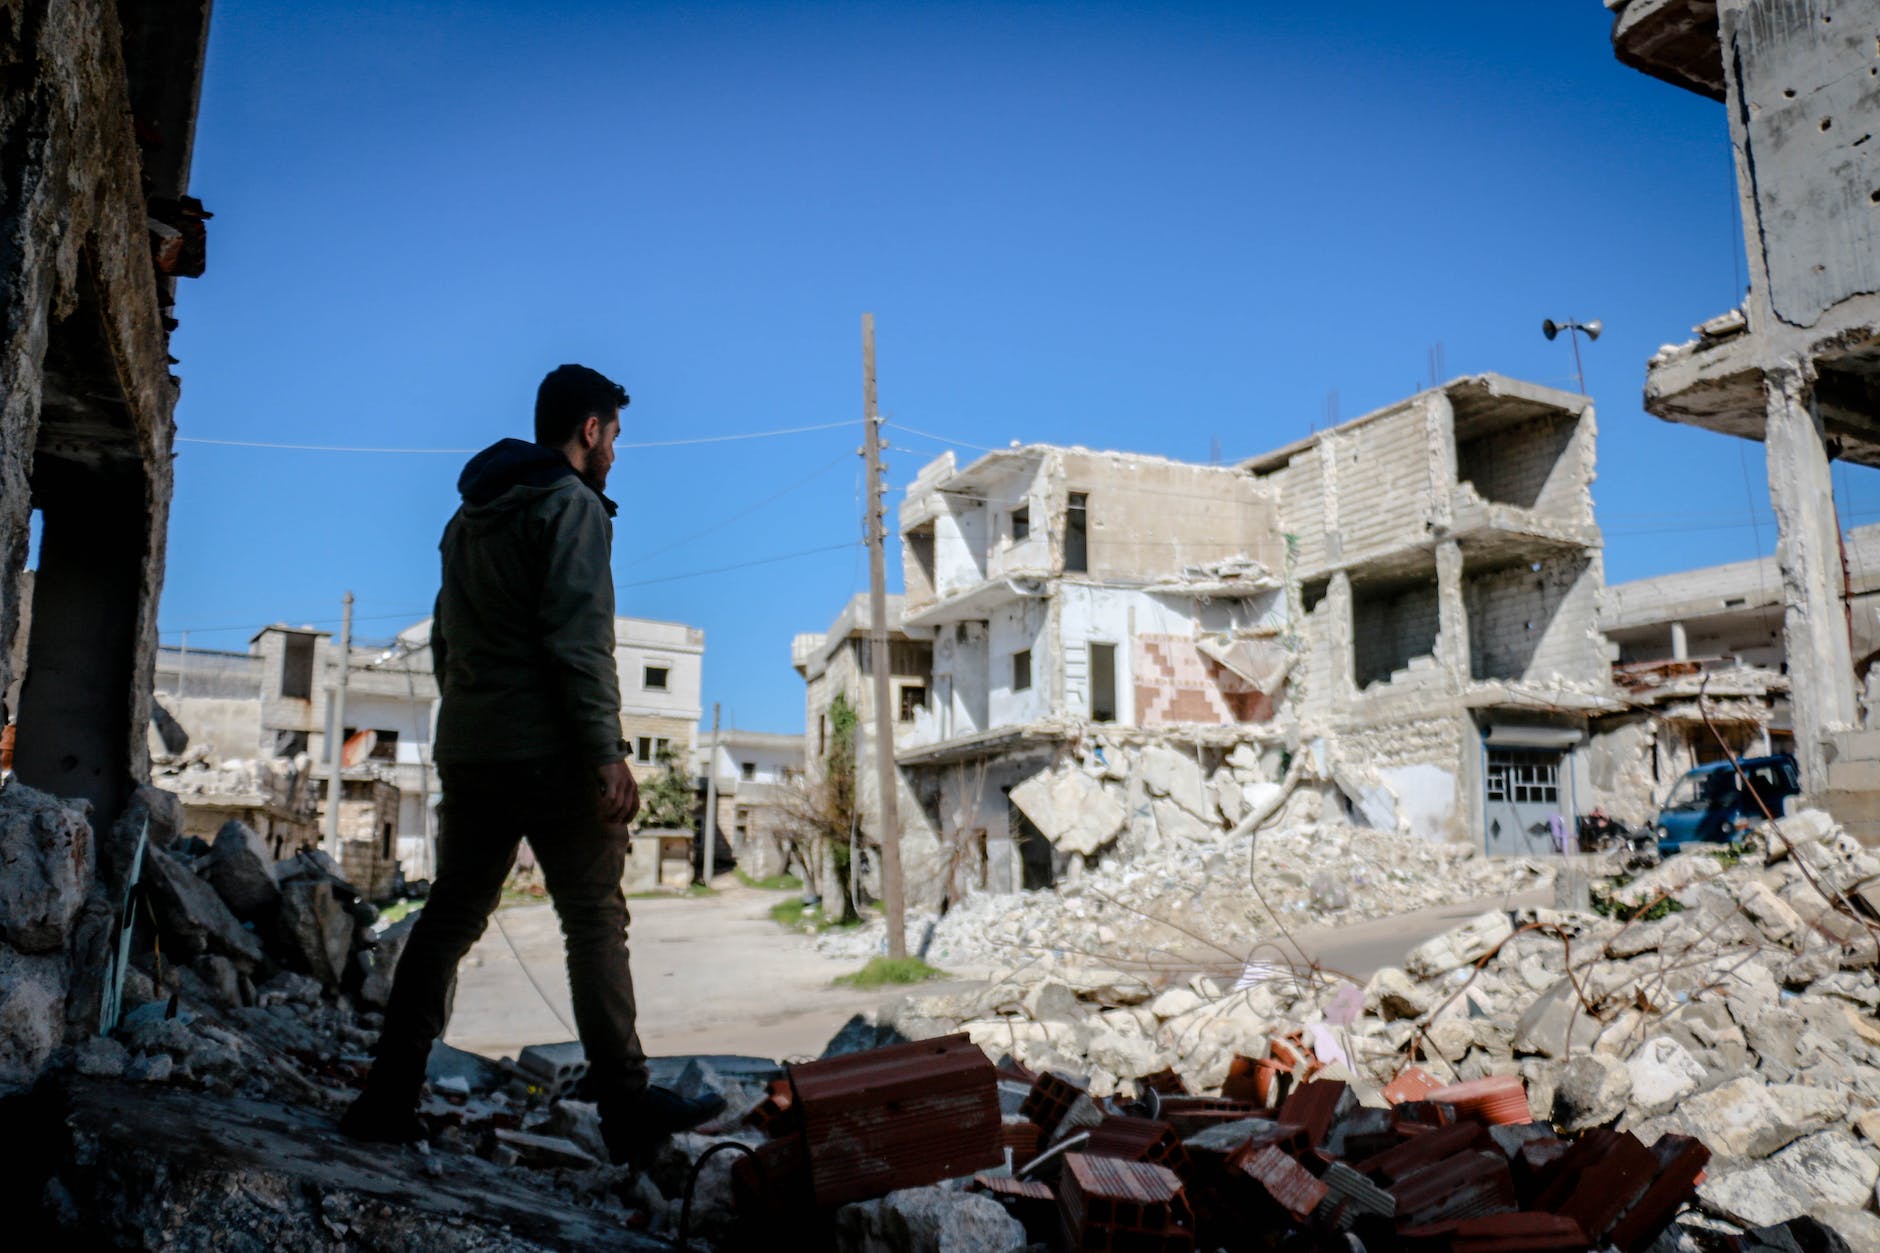 Heel Nederland in actie voor aardbevingsslachtoffers in Turkije en Syrië